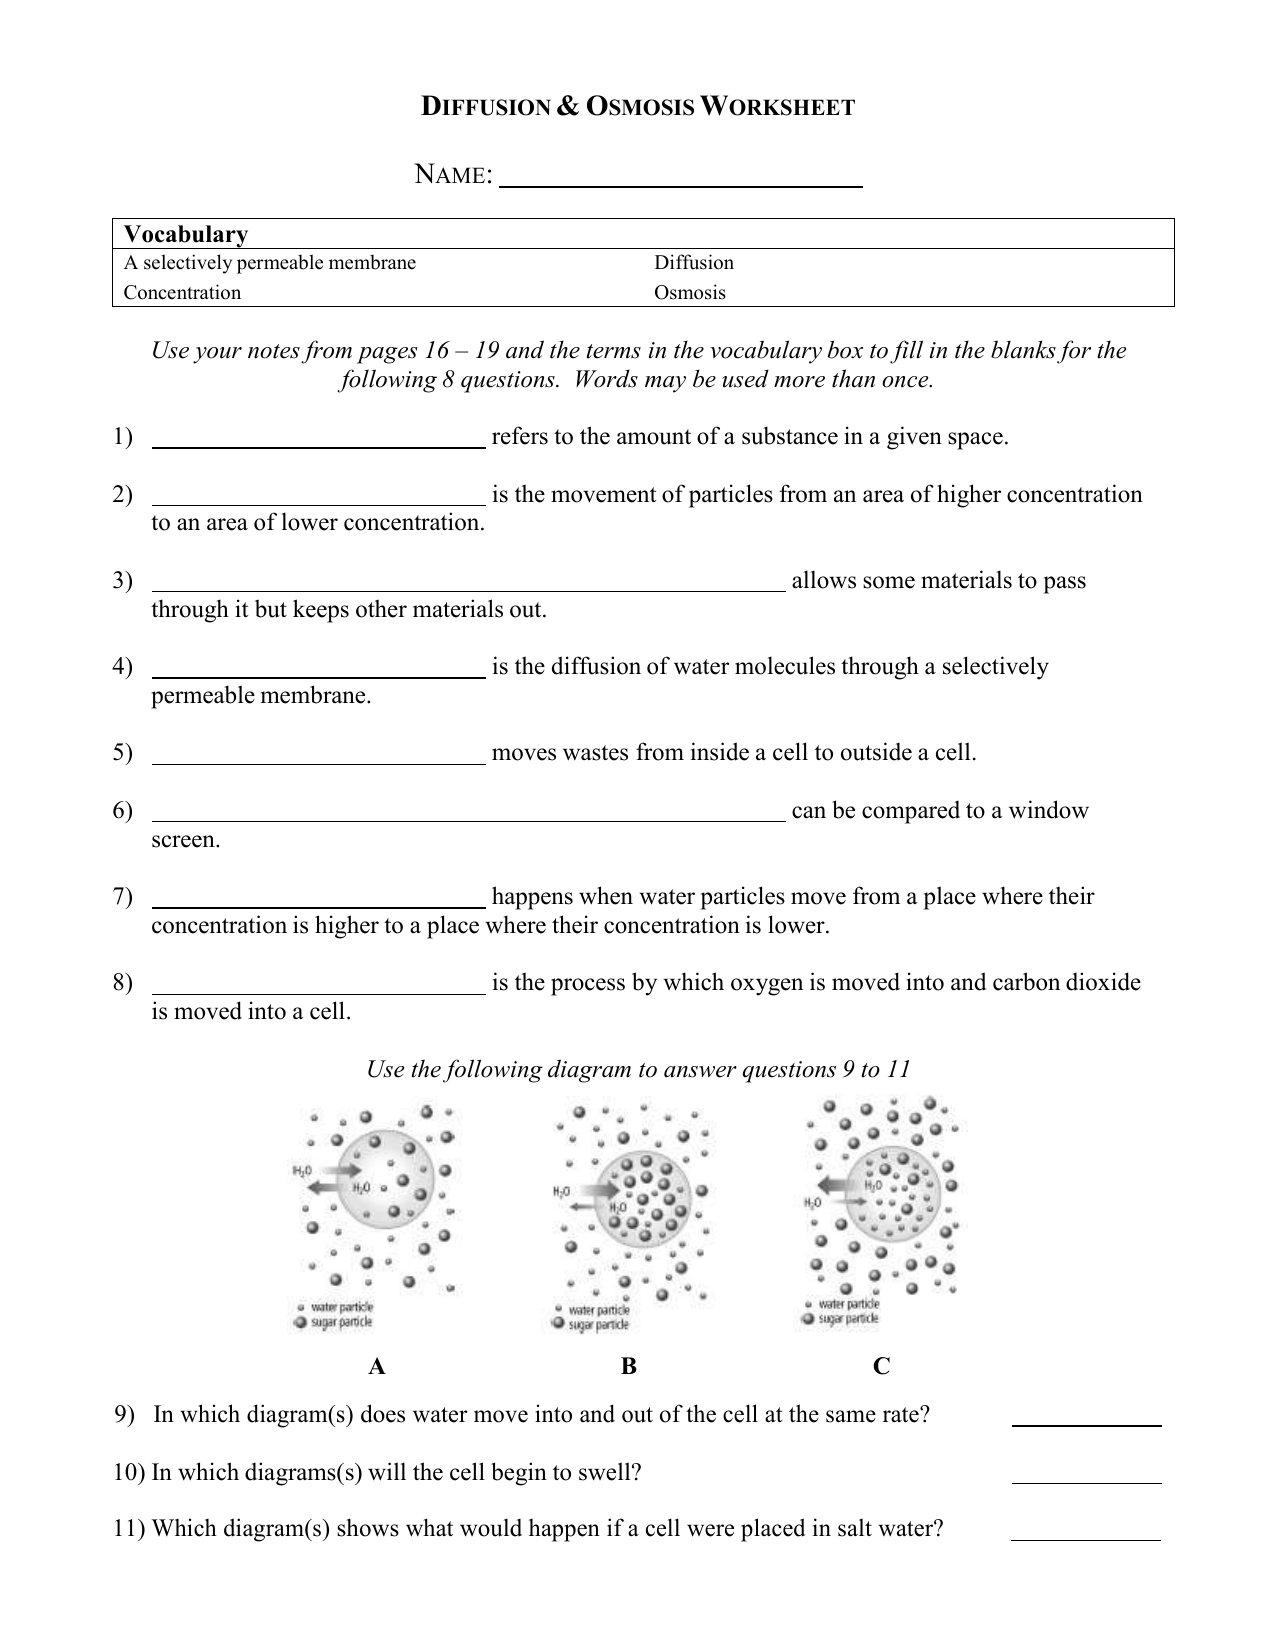 Diffusion-Osmosis-Worksheet 20 Inside Diffusion And Osmosis Worksheet